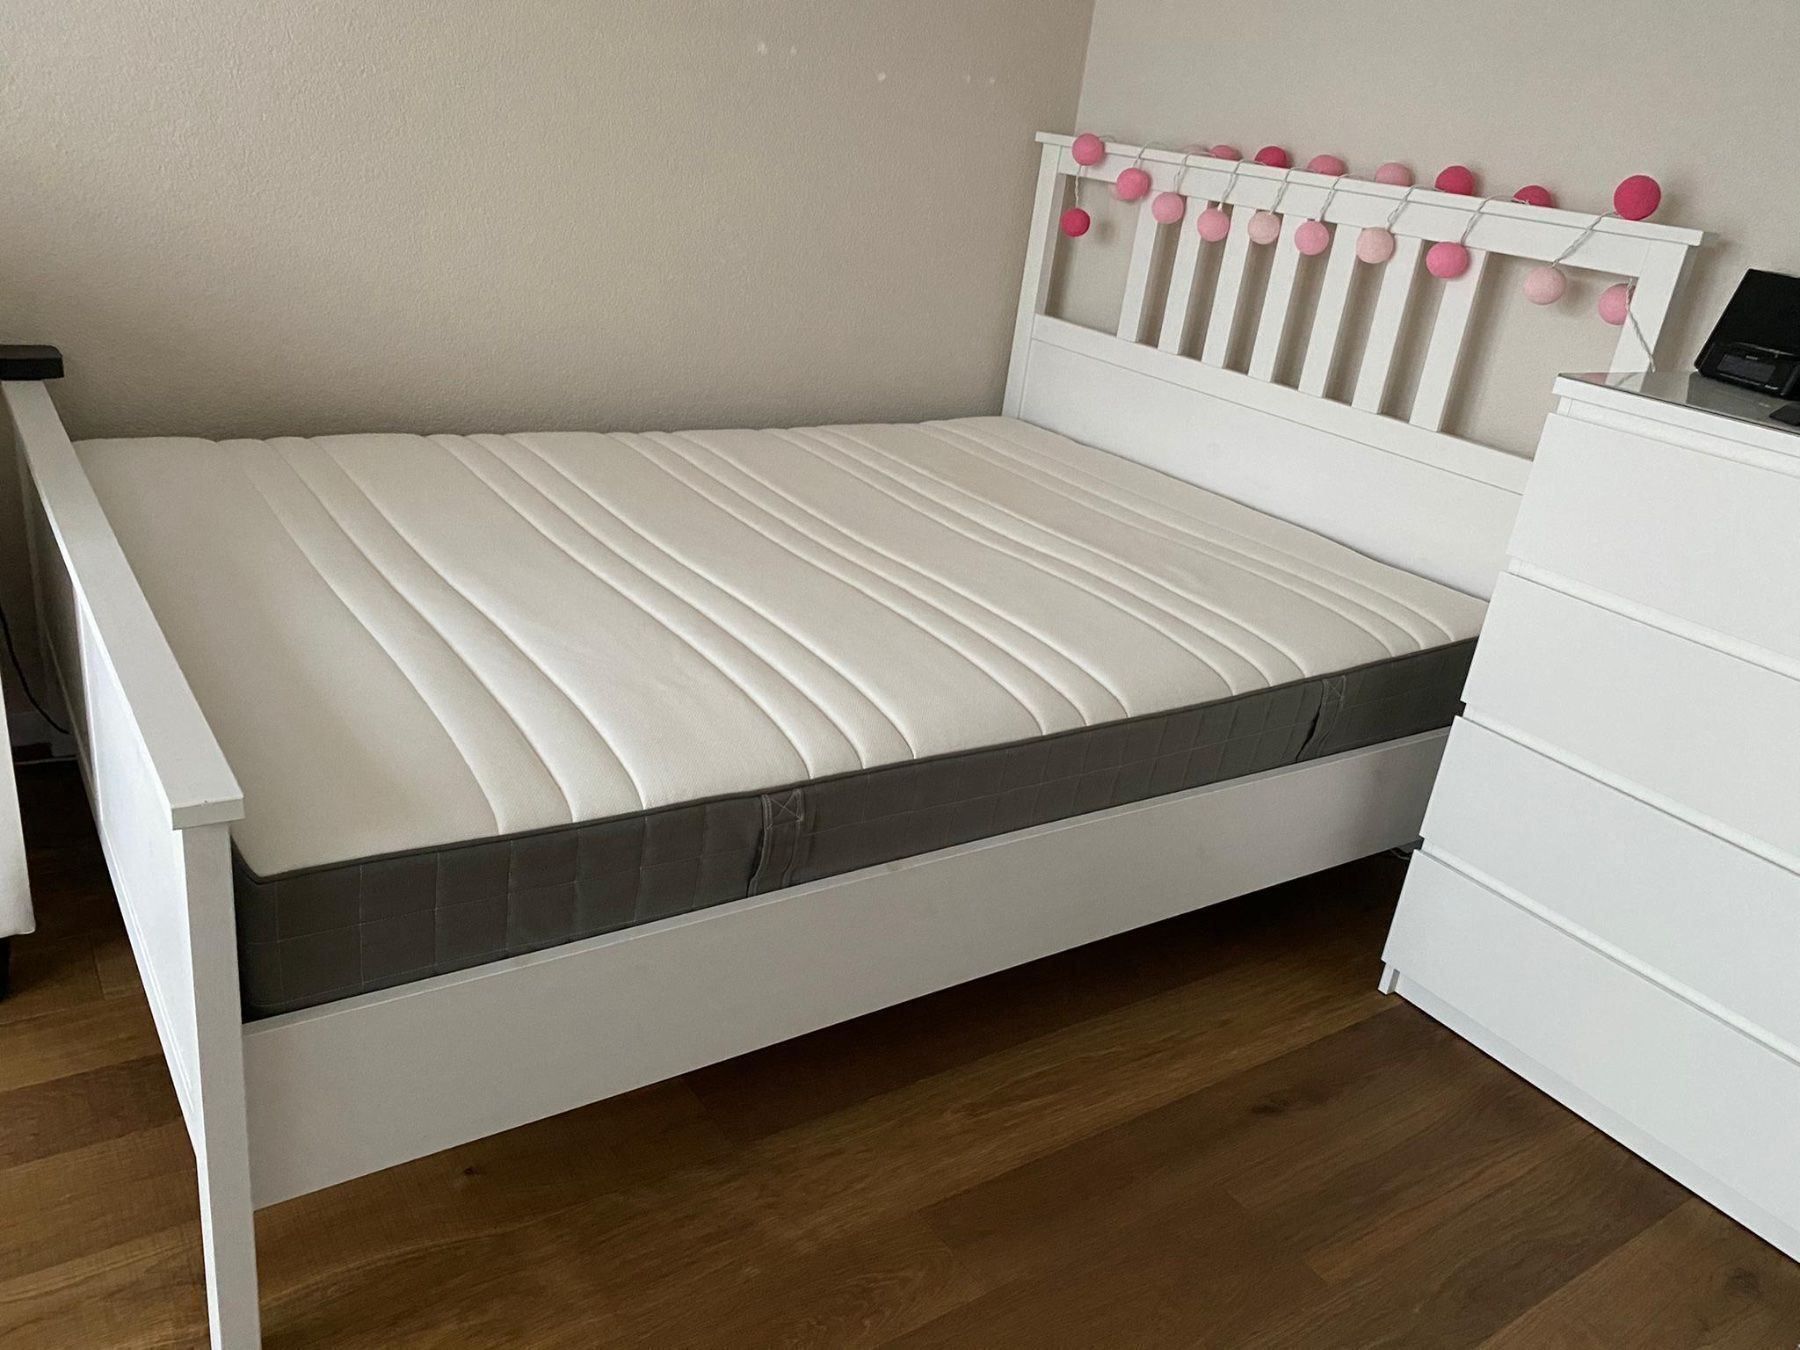 IKEA Bett Lattenrost  Matratze 140x200  Kaufen auf Ricardo